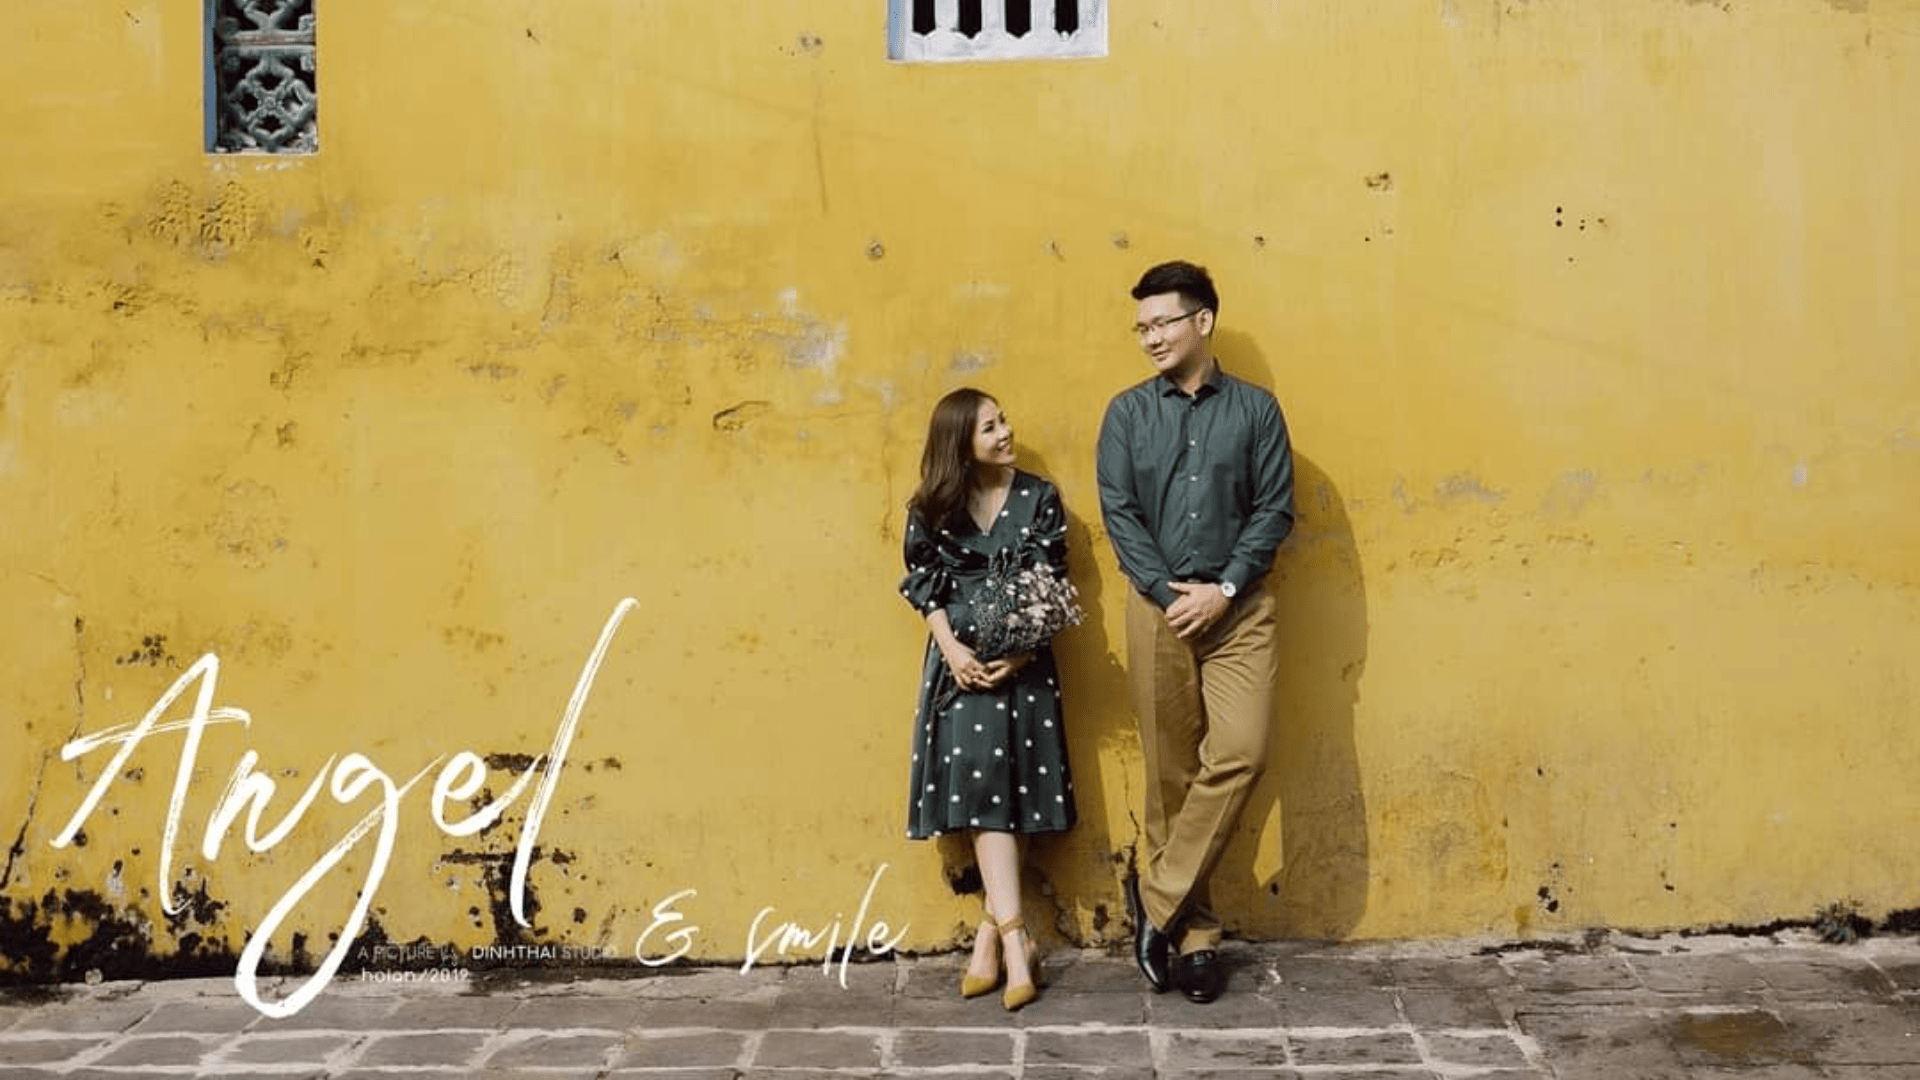 Studio Định Thái - Chuyên chụp ảnh cưới Đà Nẵng siêu xinh